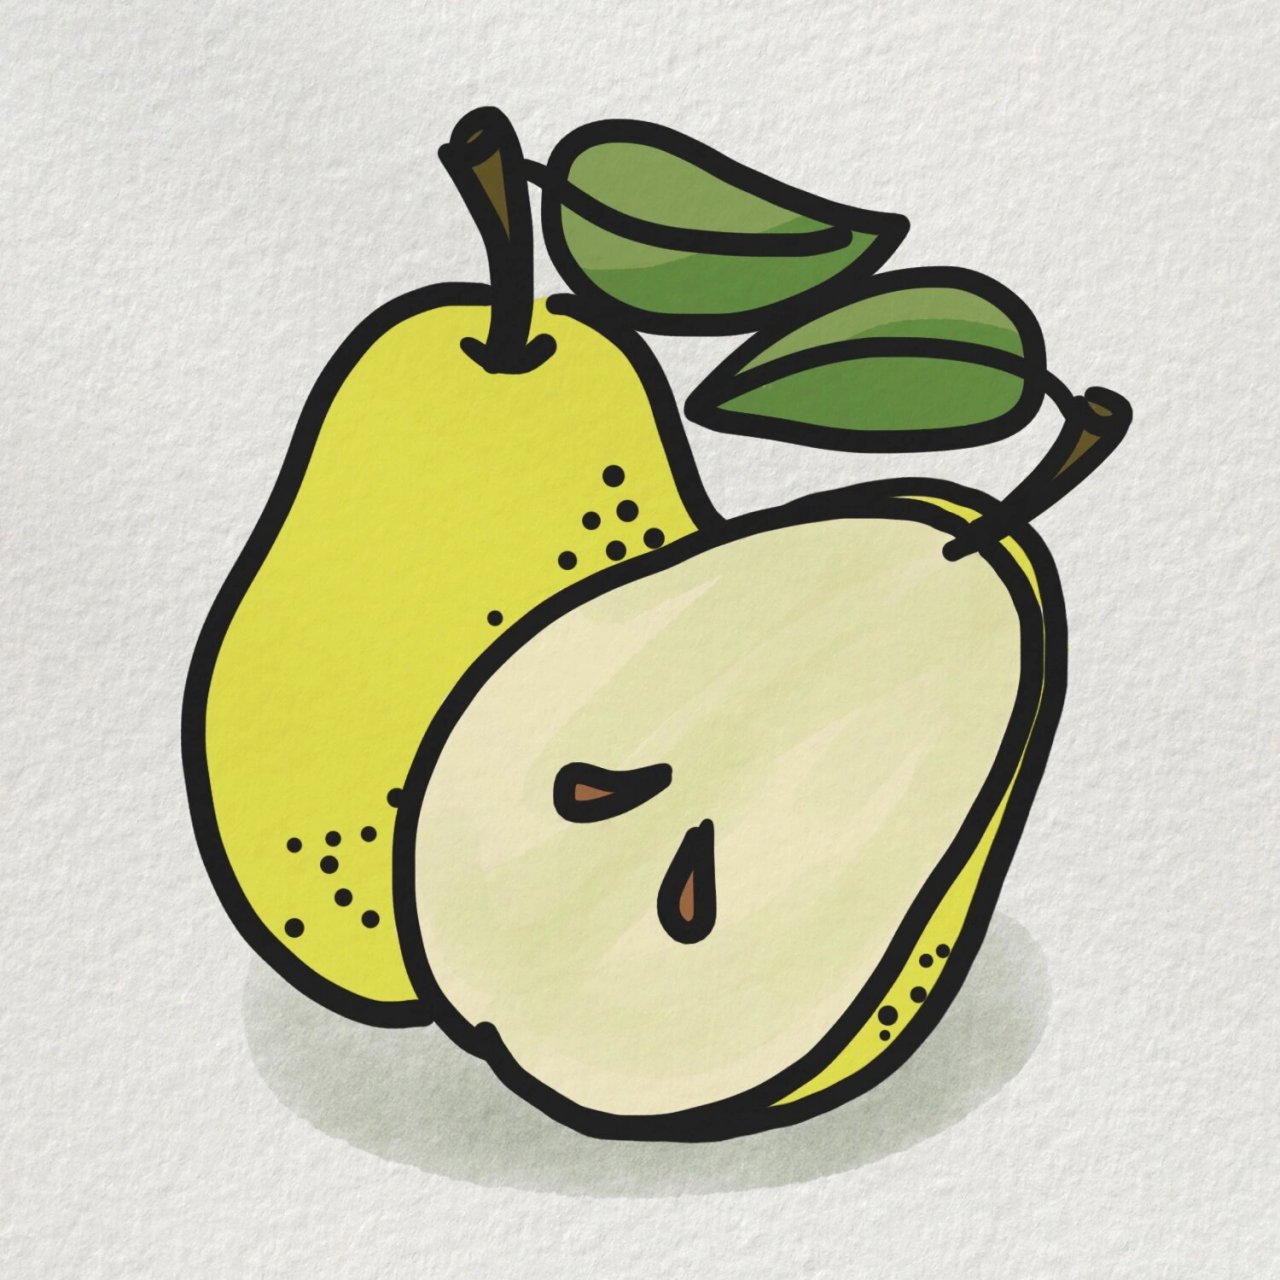 梨的种子的简笔画图片